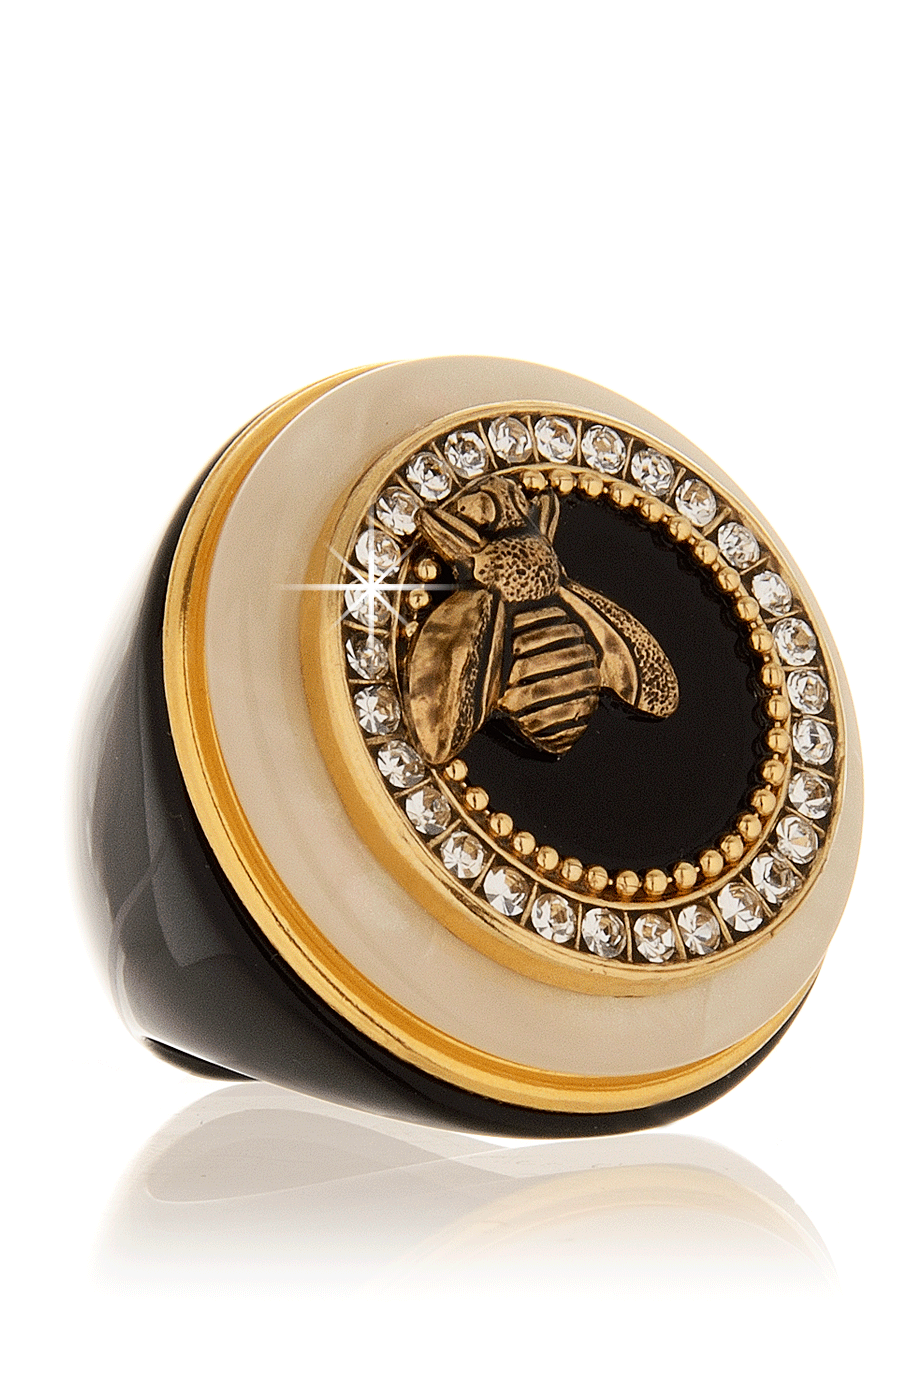 Δαχτυλίδι Μέλισσα - Ringseclectic | Κοσμήματα